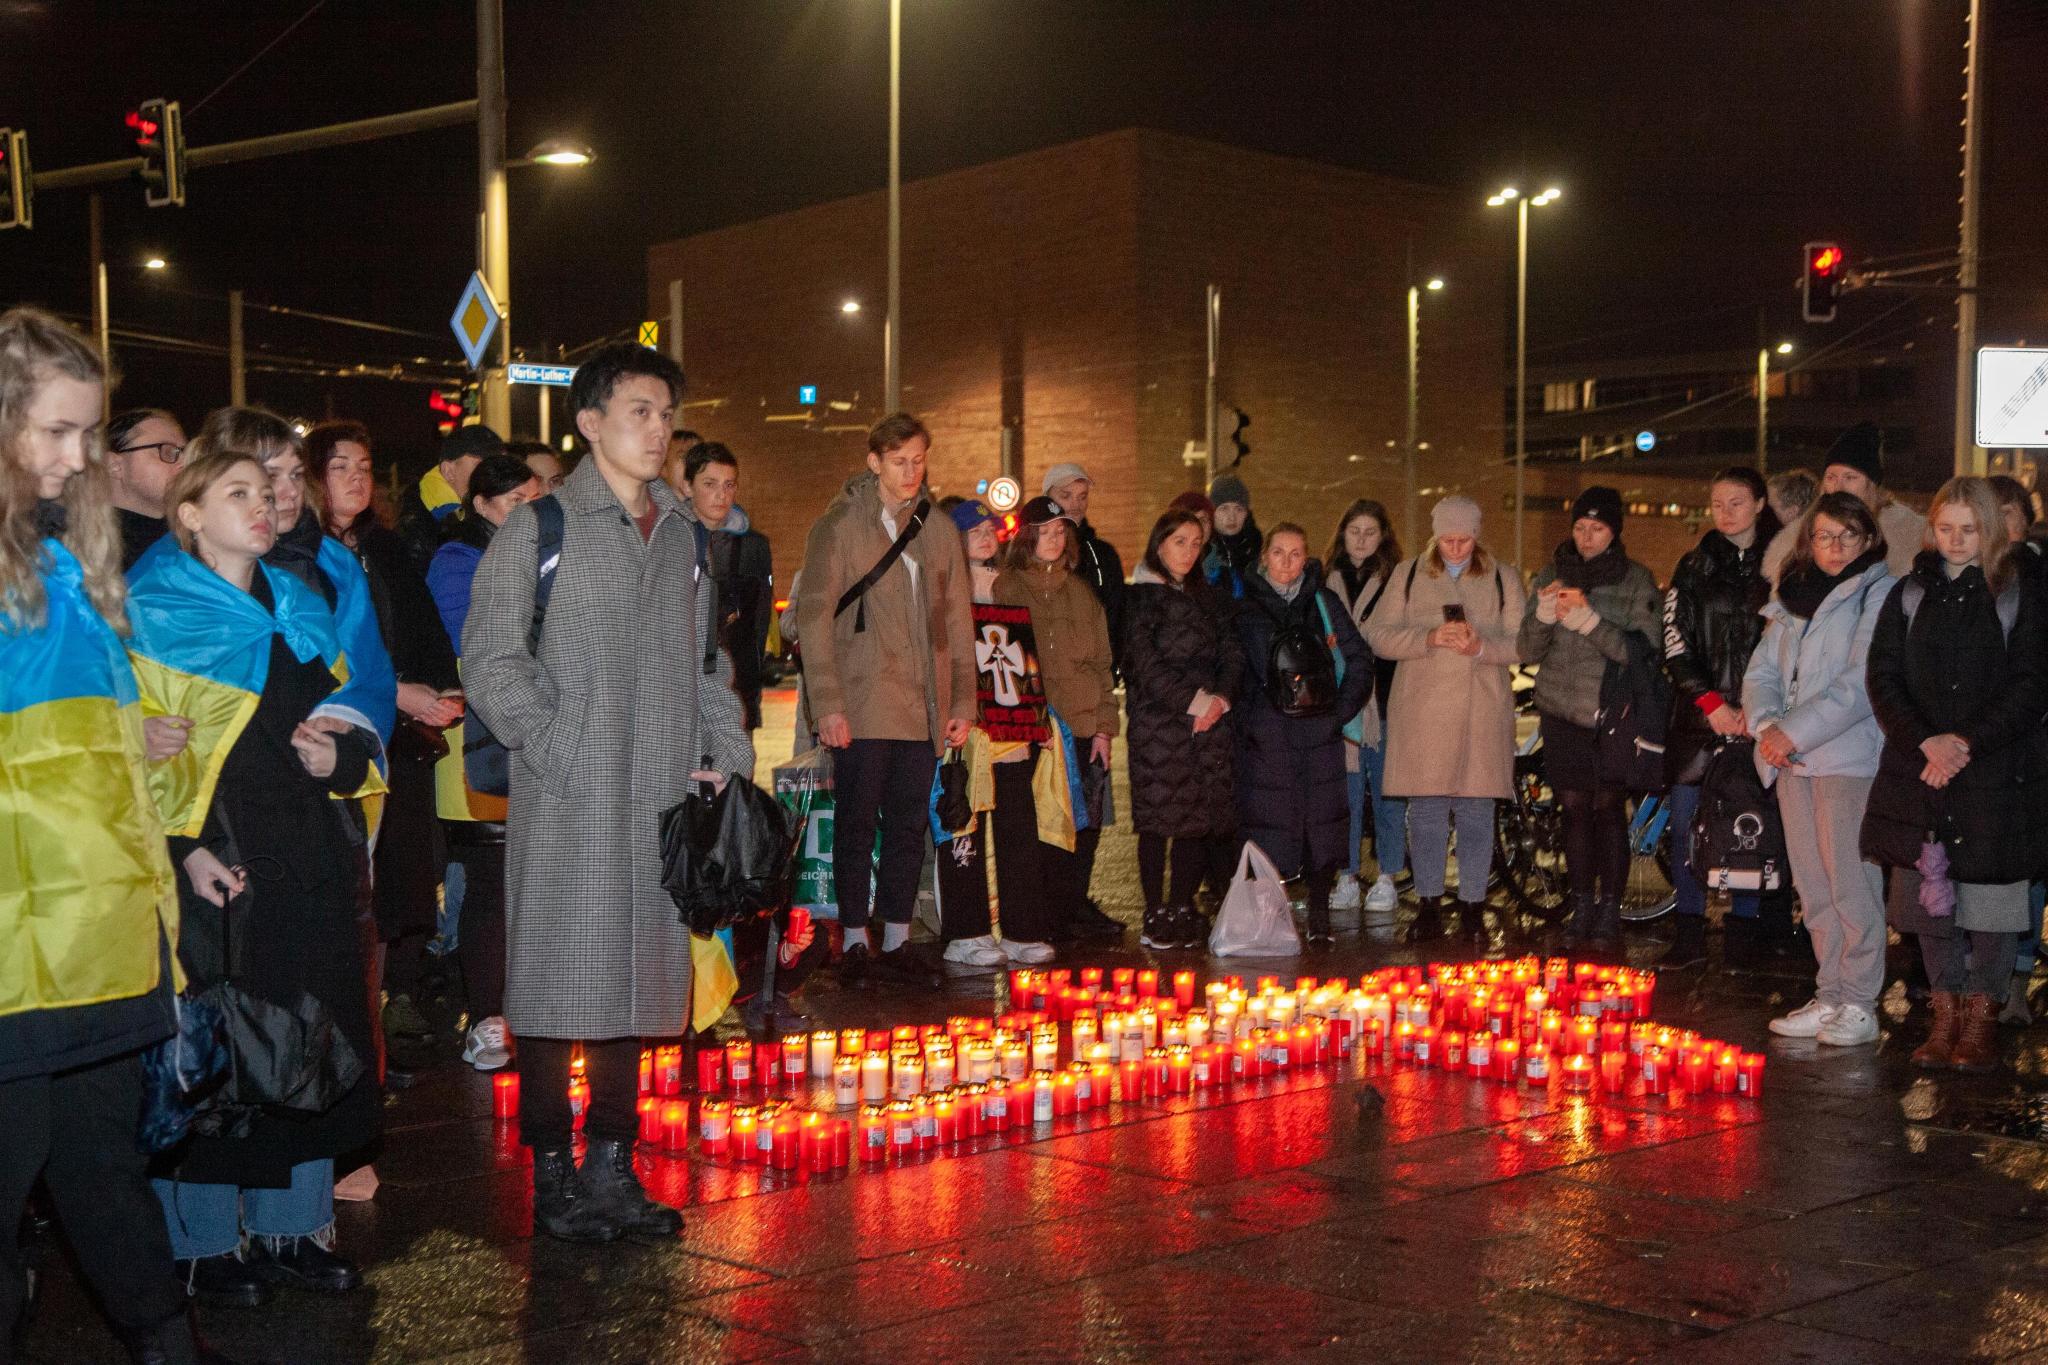   Politisch im Exil | Wie Akteure in Leipzig sich praktisch mit geflüchteten Ukrainern solidarisieren  